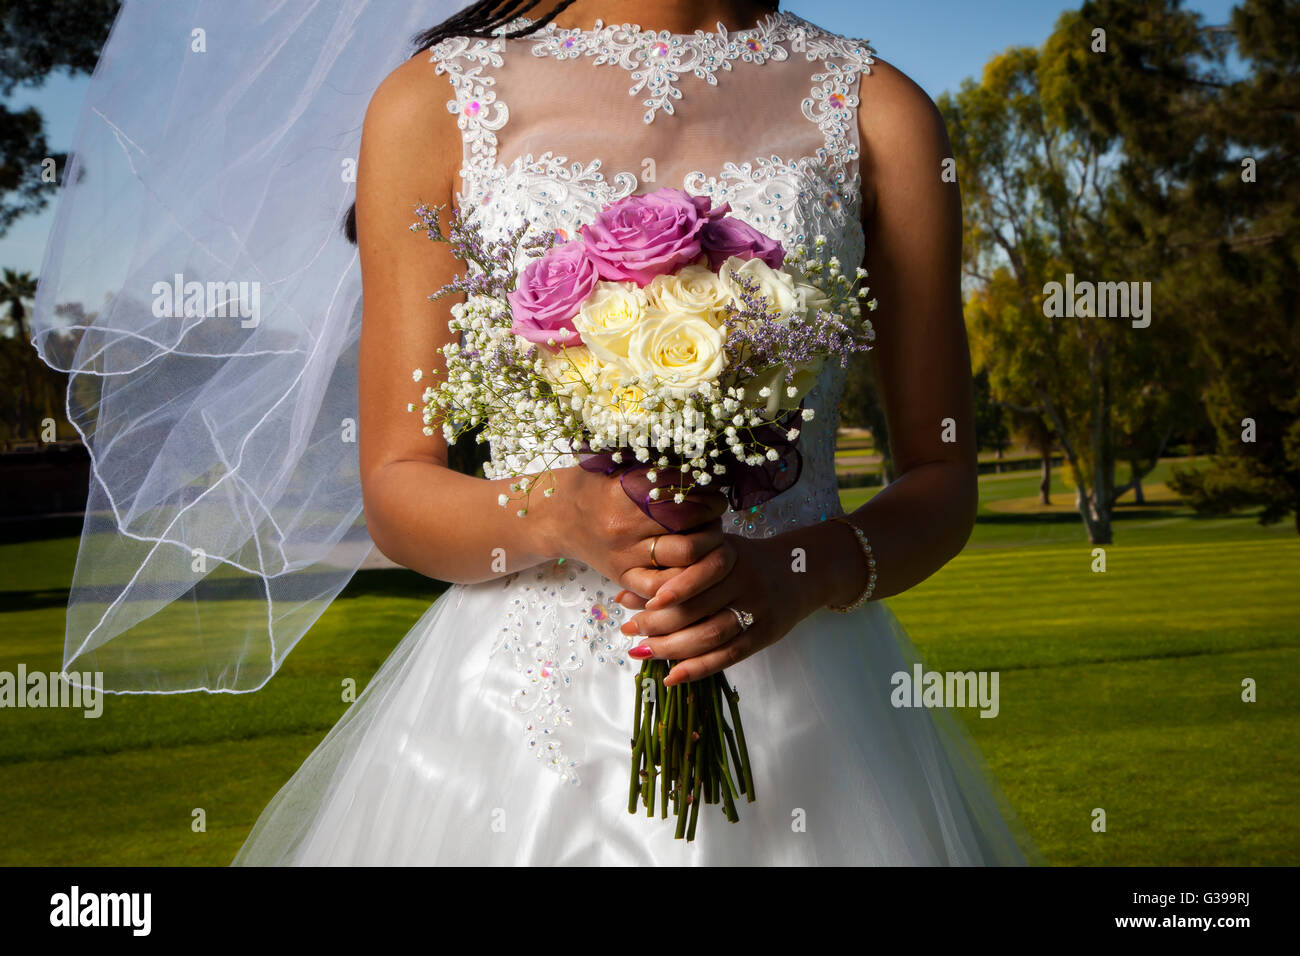 Detail-Bild von einem afroamerikanischen Braut hält ihre rose Bouquet vor ihr.  Ihr Schleier weht sanft im Wind. Stockfoto